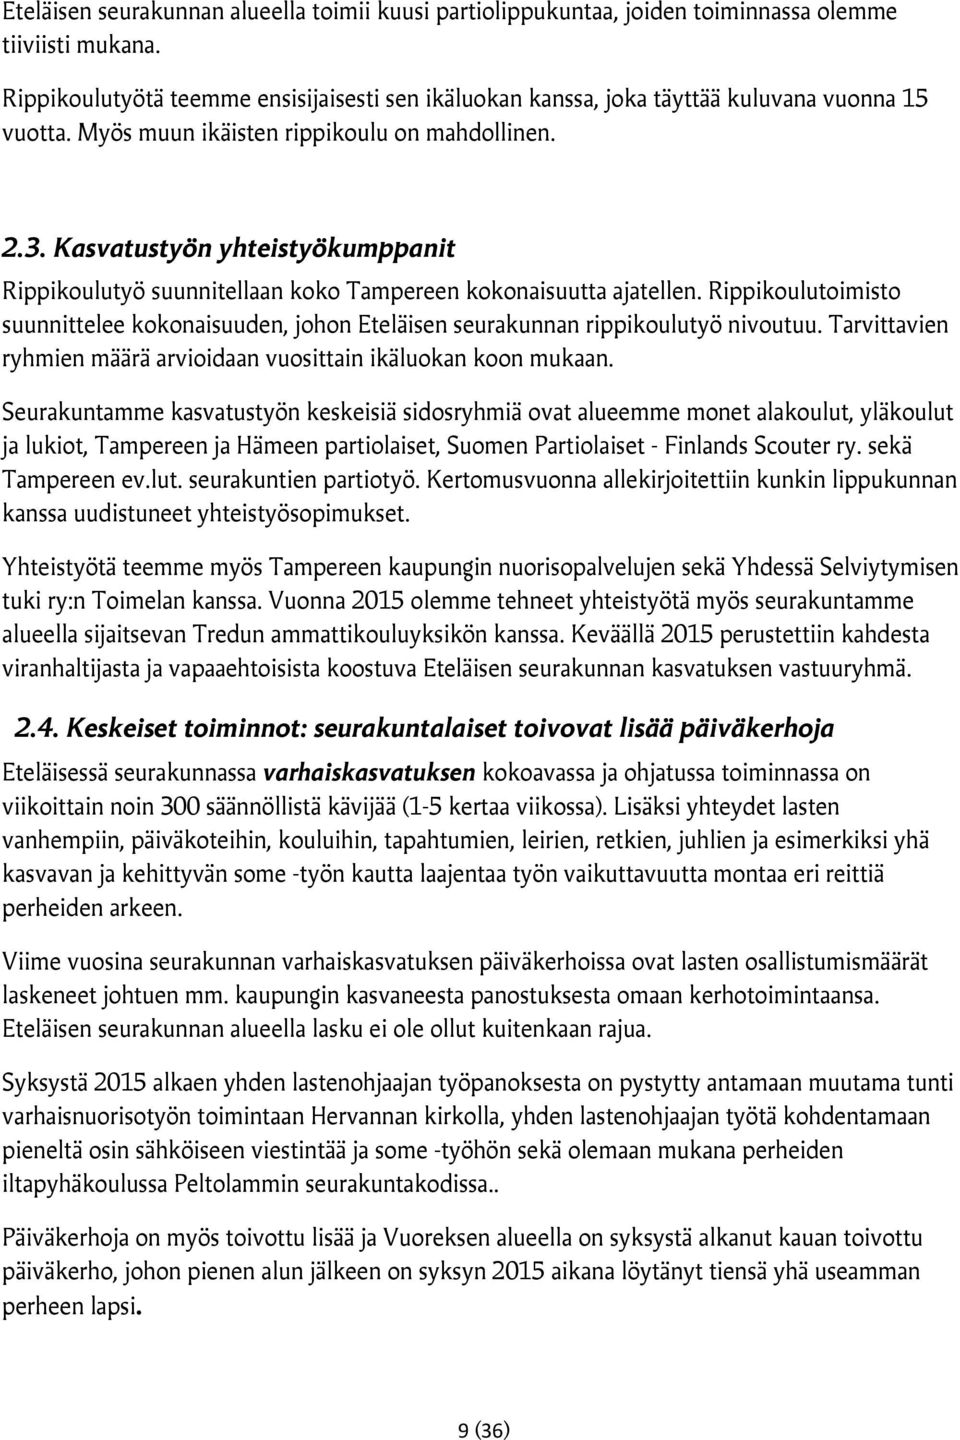 Kasvatustyön yhteistyökumppanit Rippikoulutyö suunnitellaan koko Tampereen kokonaisuutta ajatellen. Rippikoulutoimisto suunnittelee kokonaisuuden, johon Eteläisen seurakunnan rippikoulutyö nivoutuu.